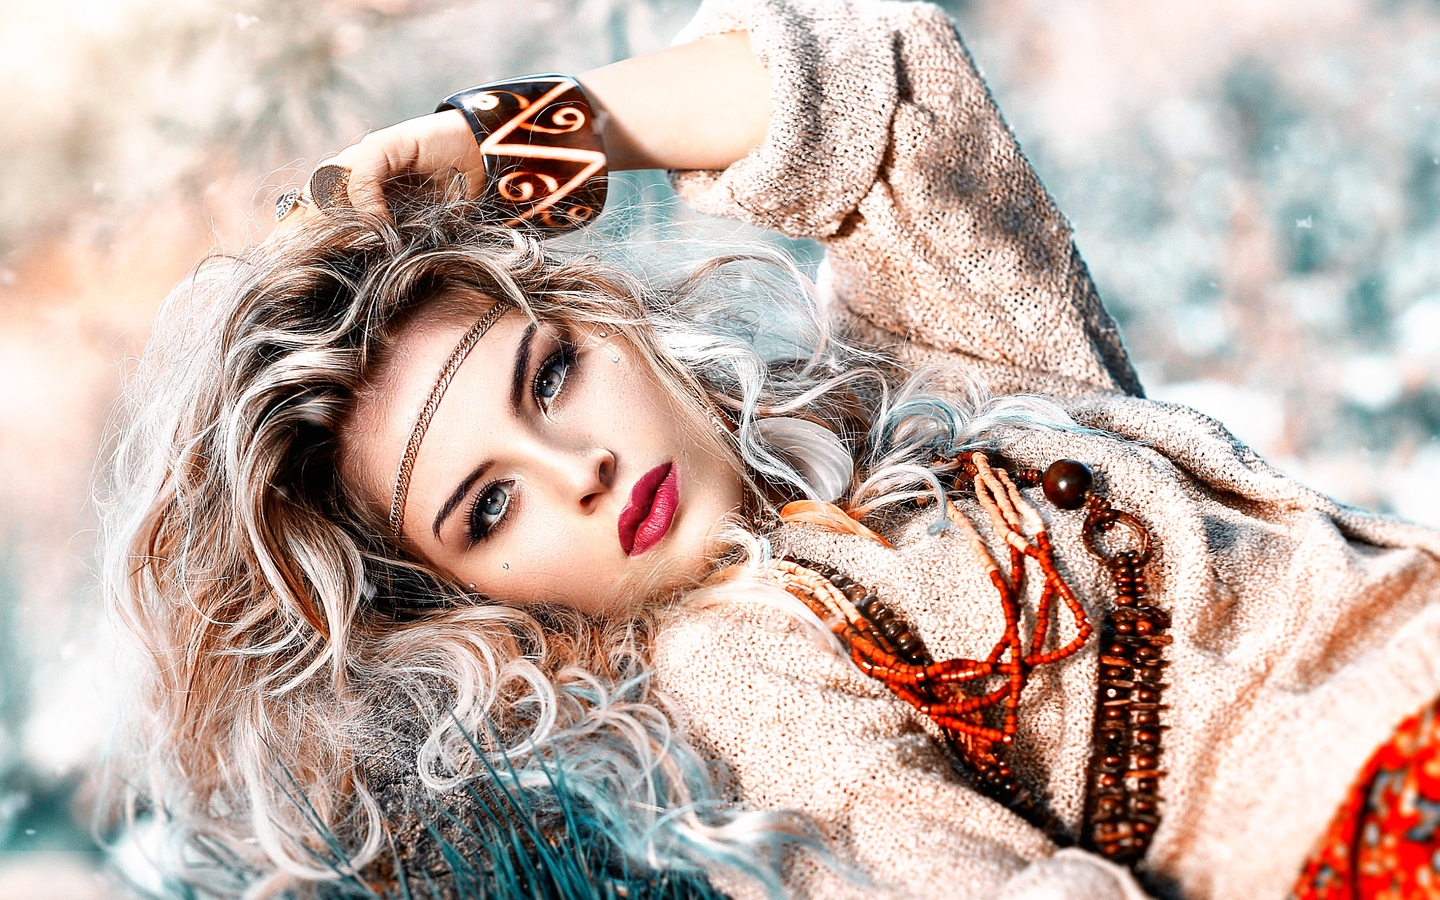 Картинка: Девушка, блондинка, локоны, лицо, макияж, украшения, Alessandro Di Cicco, фотограф